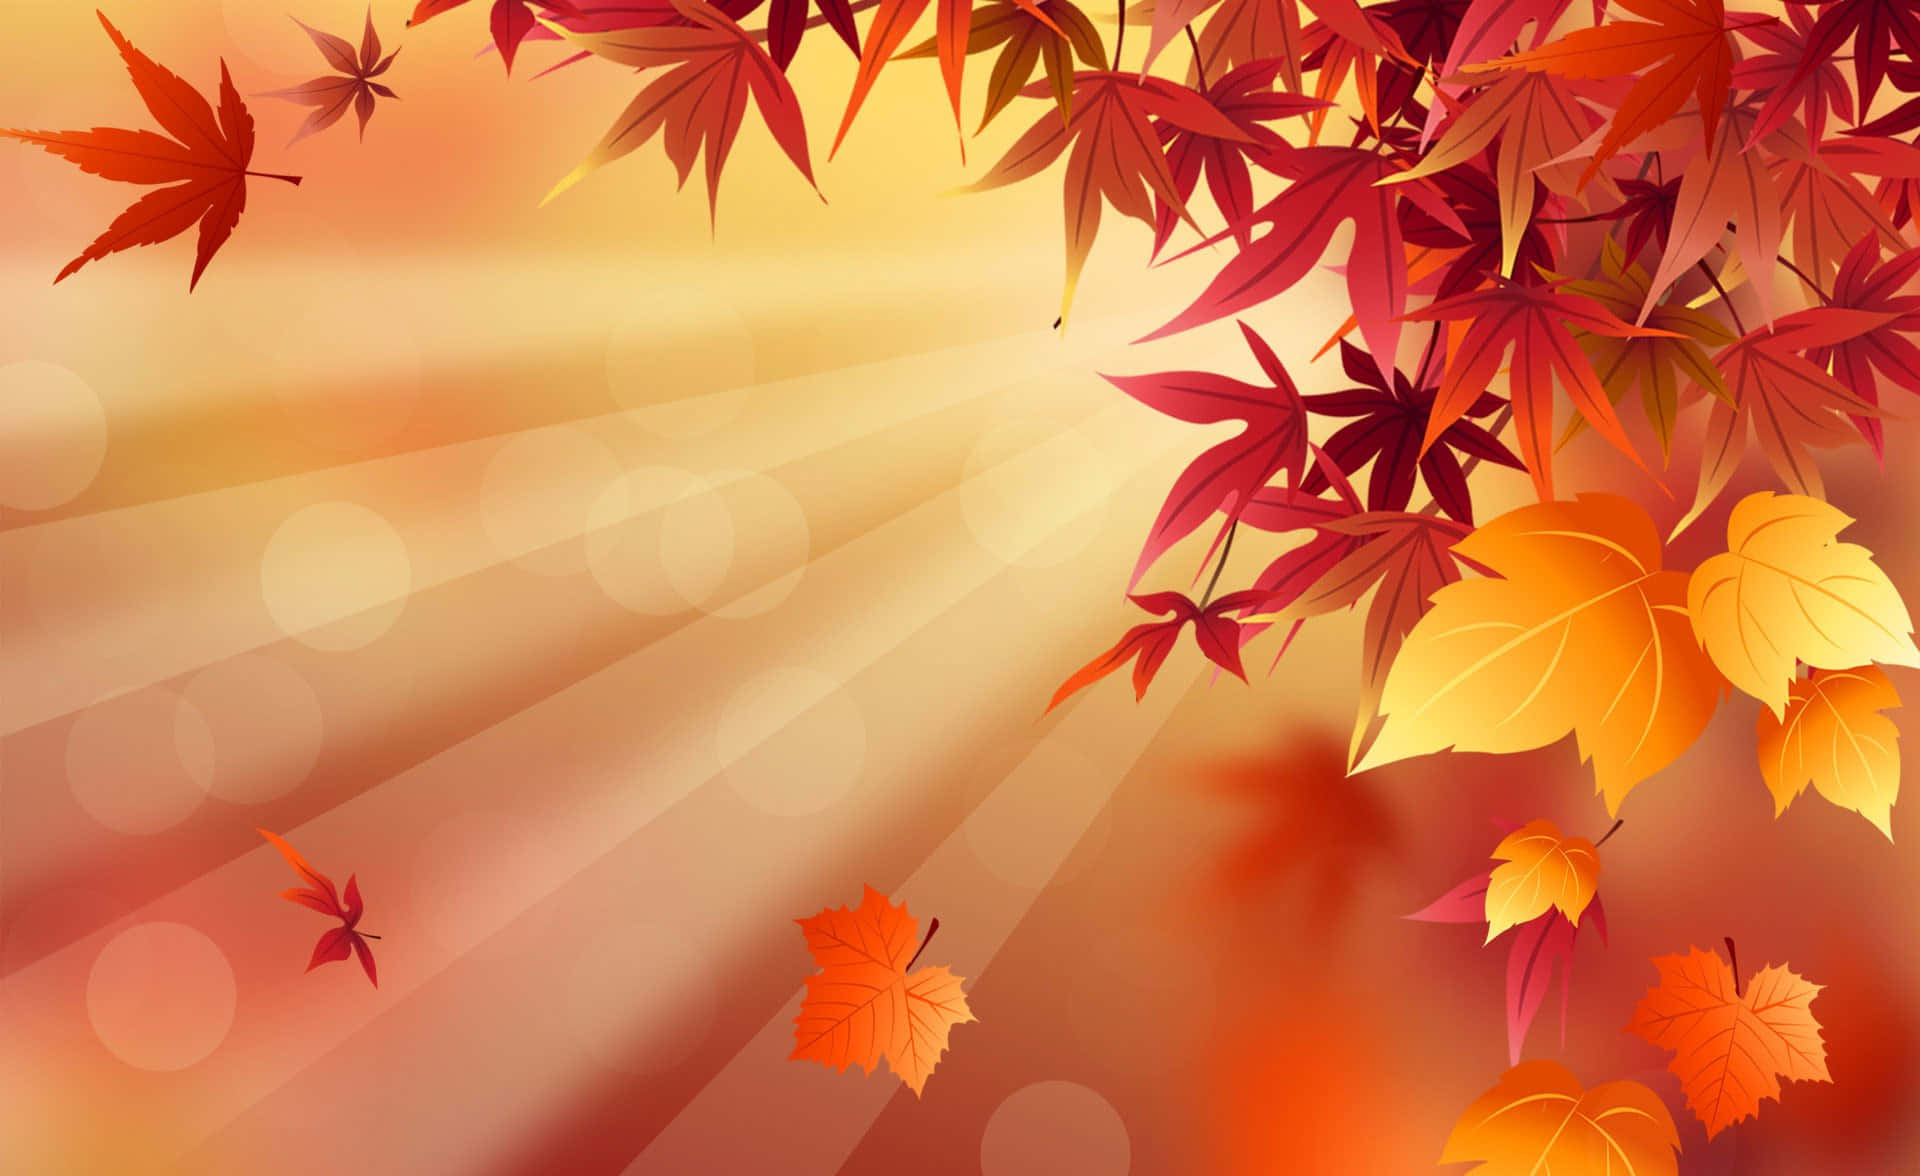 A single Fall Leaf rested atop the deep orange hues of Autumn foliage.